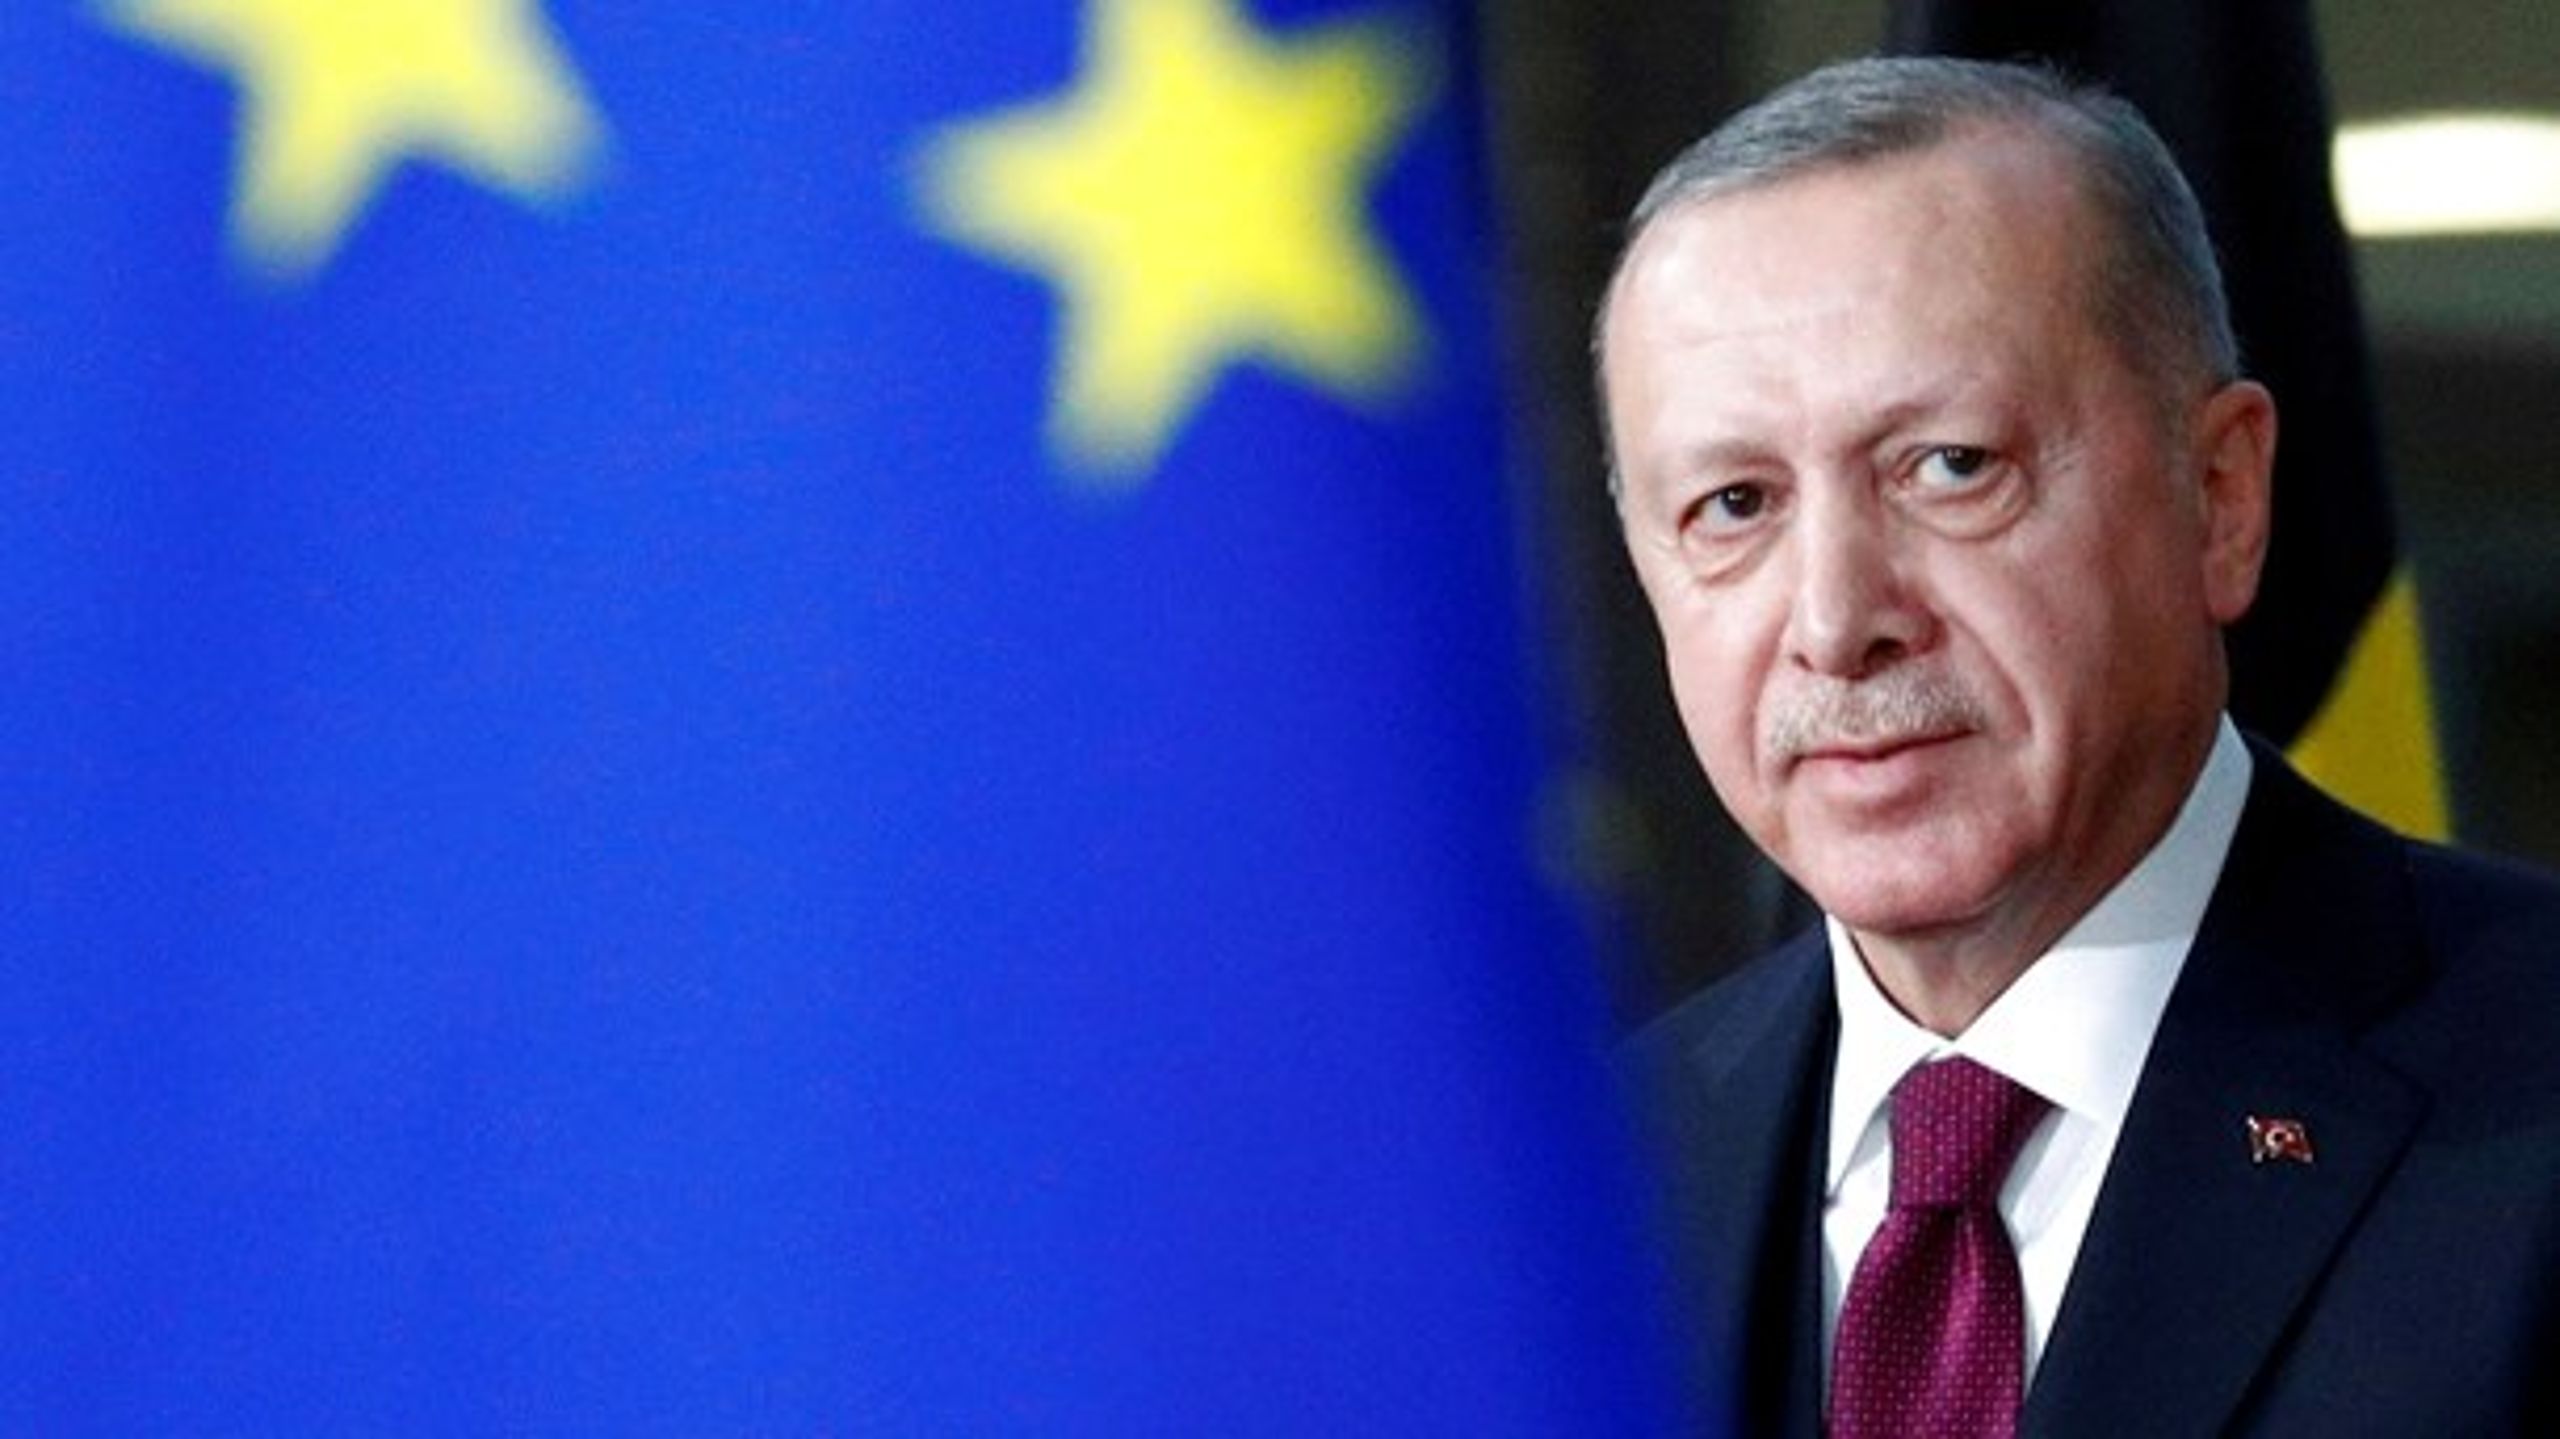 15 år efter, at Tyrkiet åbnede forhandlinger om optagelse, er EU-Kommissionen stadig mere bekymret over præsident Recep Tayyip Erdogans autoritære styre.